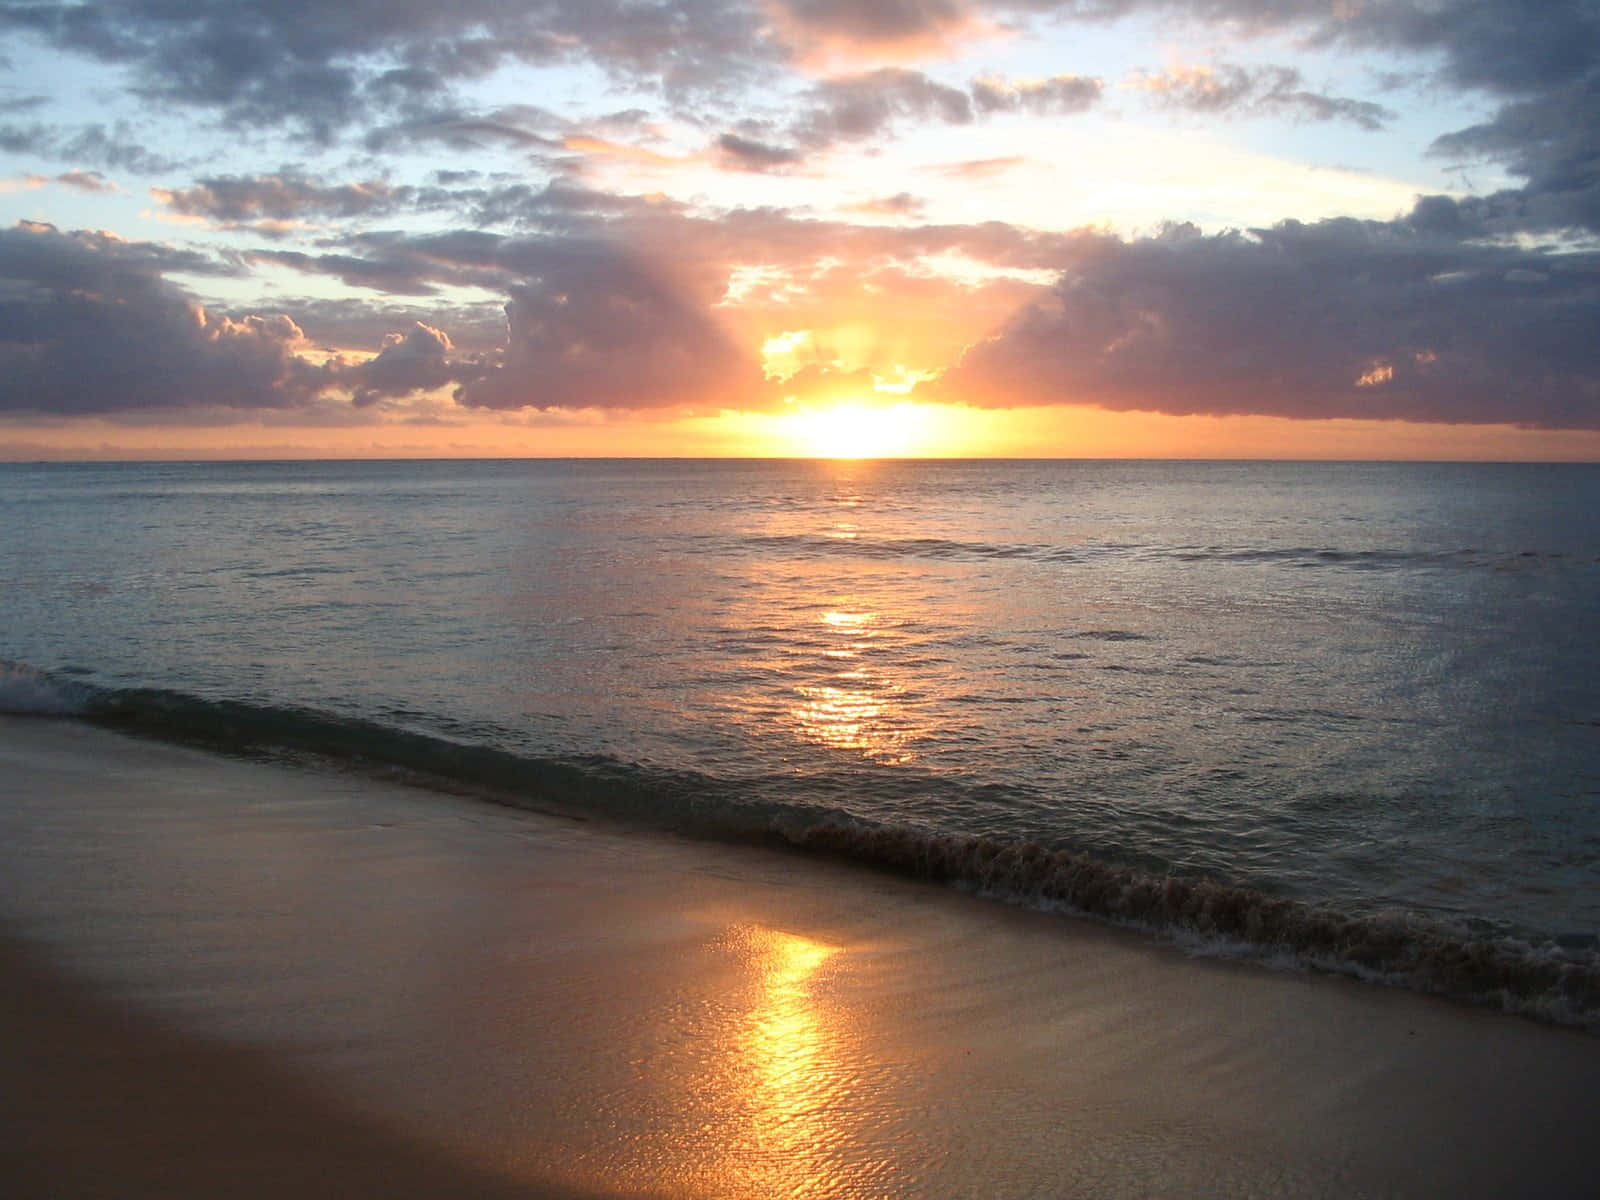 Eineinsamer Moment Der Ruhe Und Gelassenheit, Während Man Den Sonnenuntergang Am Strand Betrachtet.